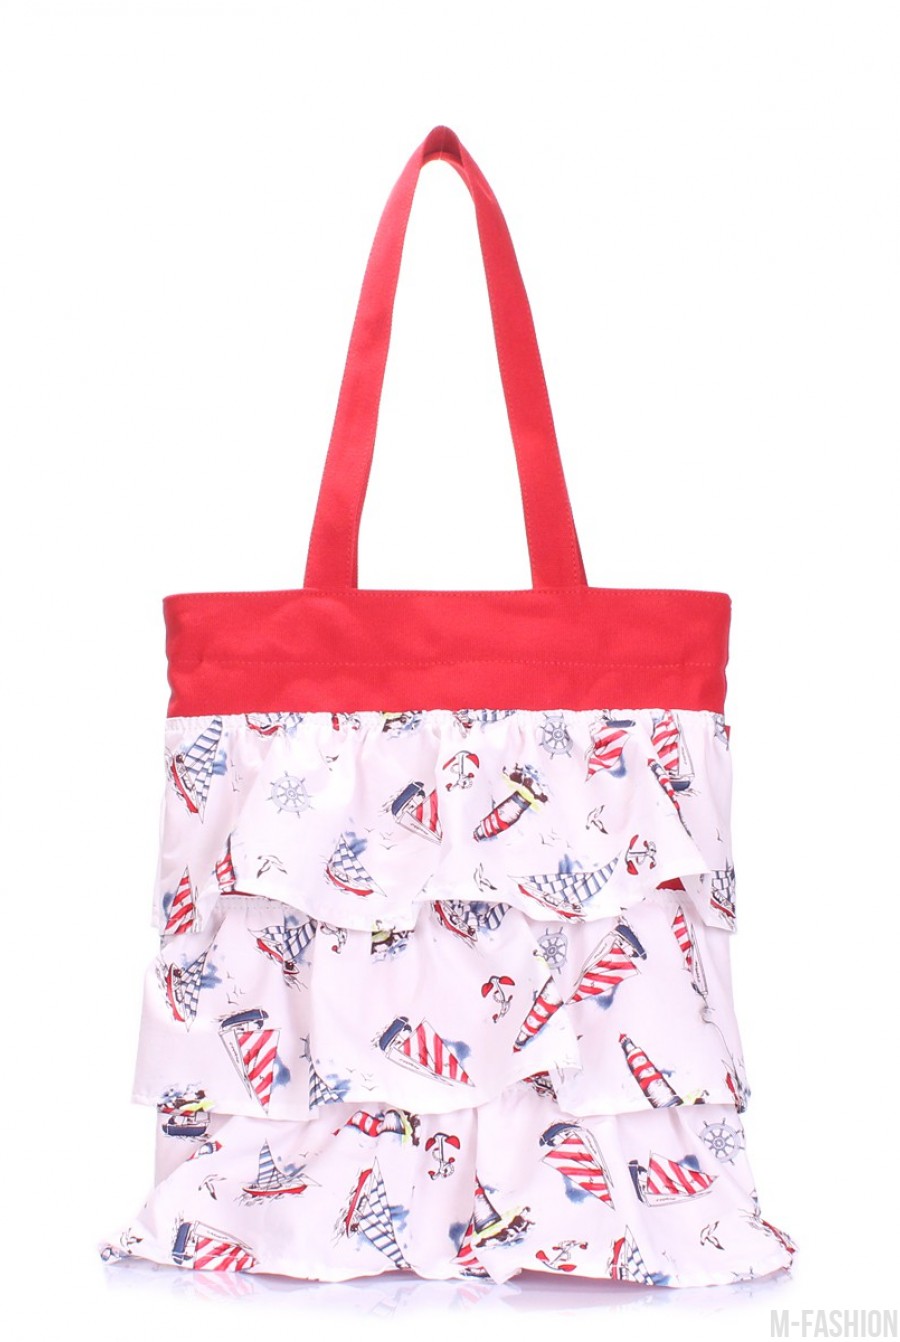 Бело-красная сумка из котона с декоративными рюшами - Фото 1